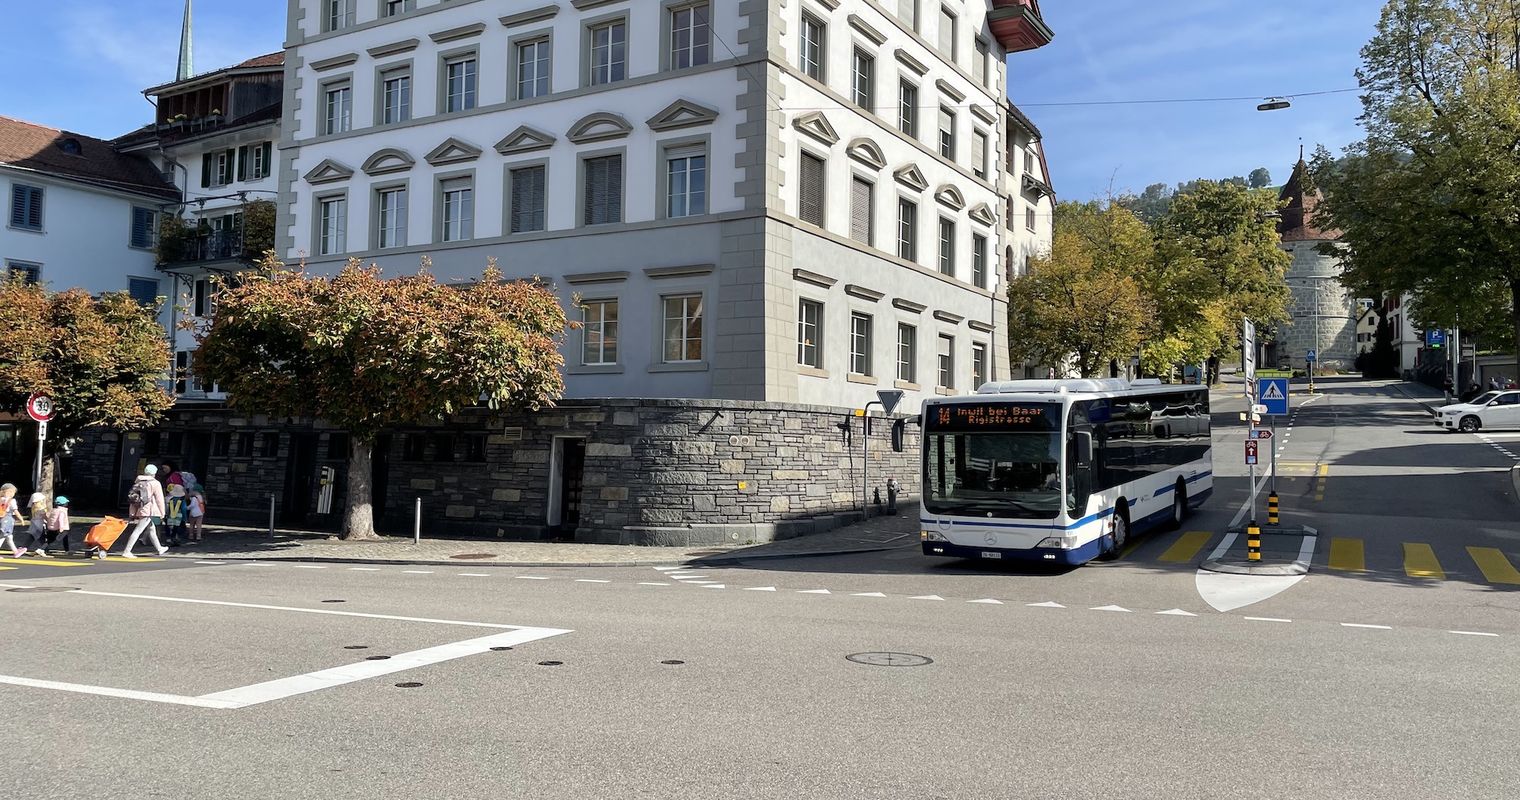 Tempo 30 in Zug: Stadtrat soll jetzt Klartext reden